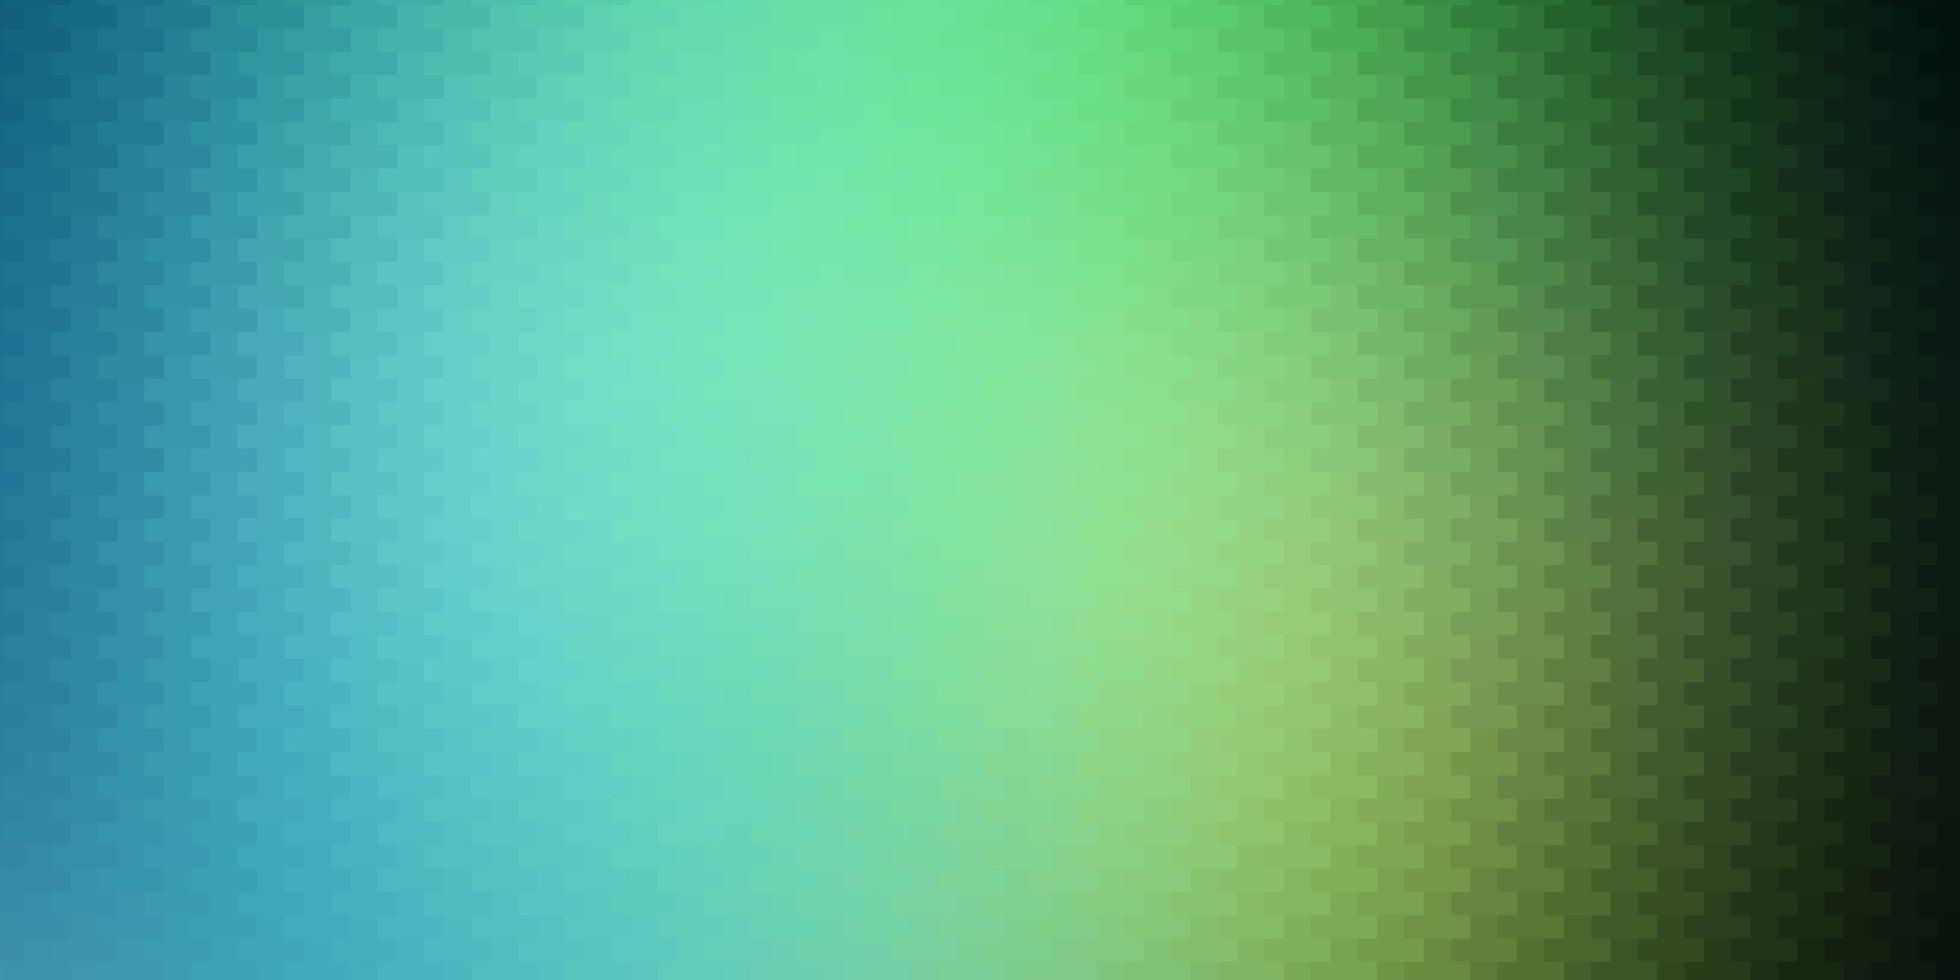 pano de fundo de vetor verde claro com retângulos. ilustração gradiente abstrata com retângulos. padrão para livretos de negócios, folhetos